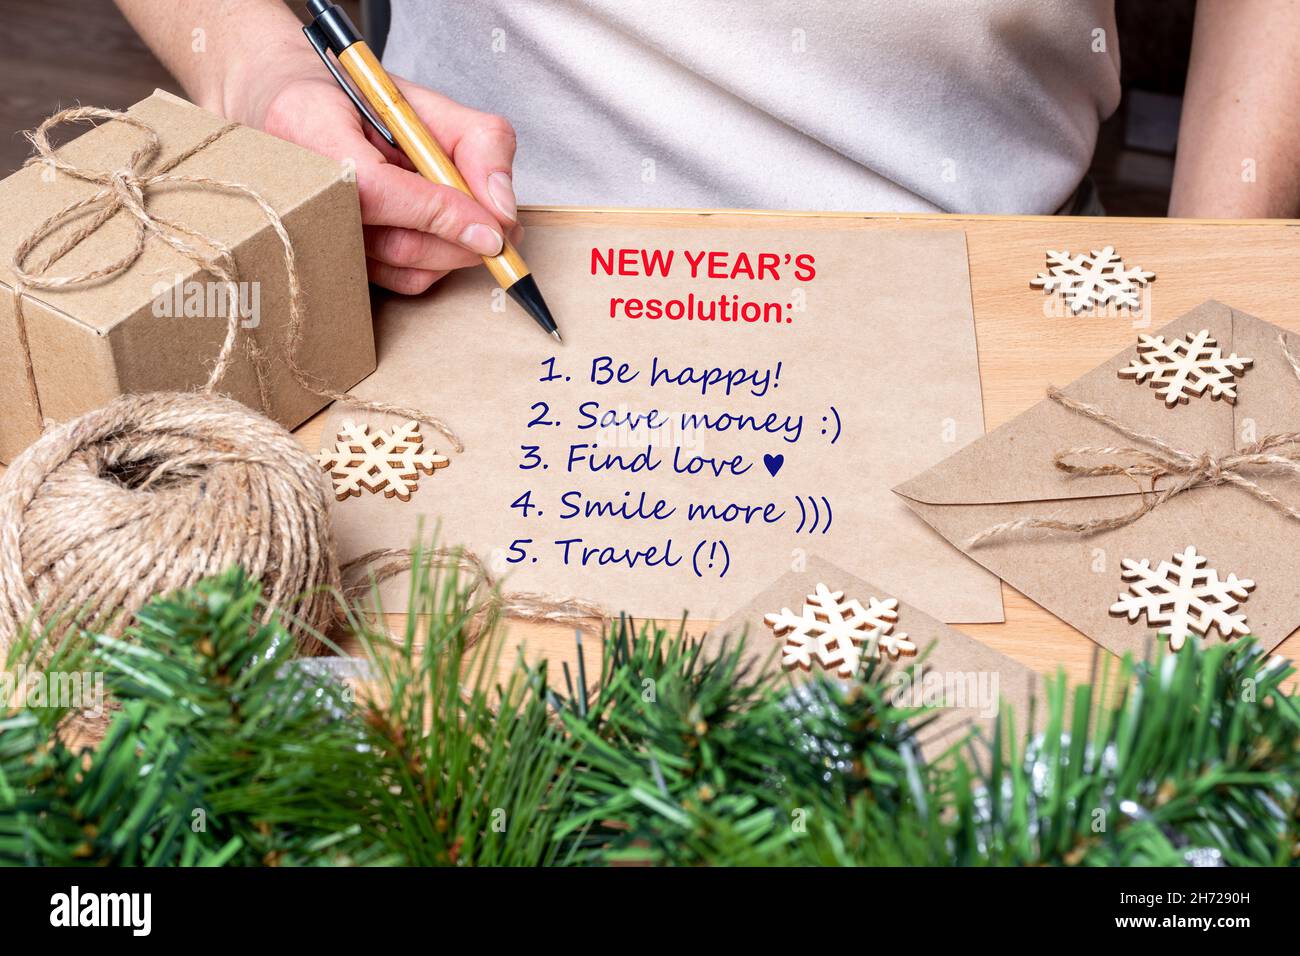 Résolution du nouvel an - main tenant un stylo et écrivant les plans pour la nouvelle année: Être heureux, trouver l'amour, économiser de l'argent, Voyage sur la table avec des cadeaux, s Banque D'Images